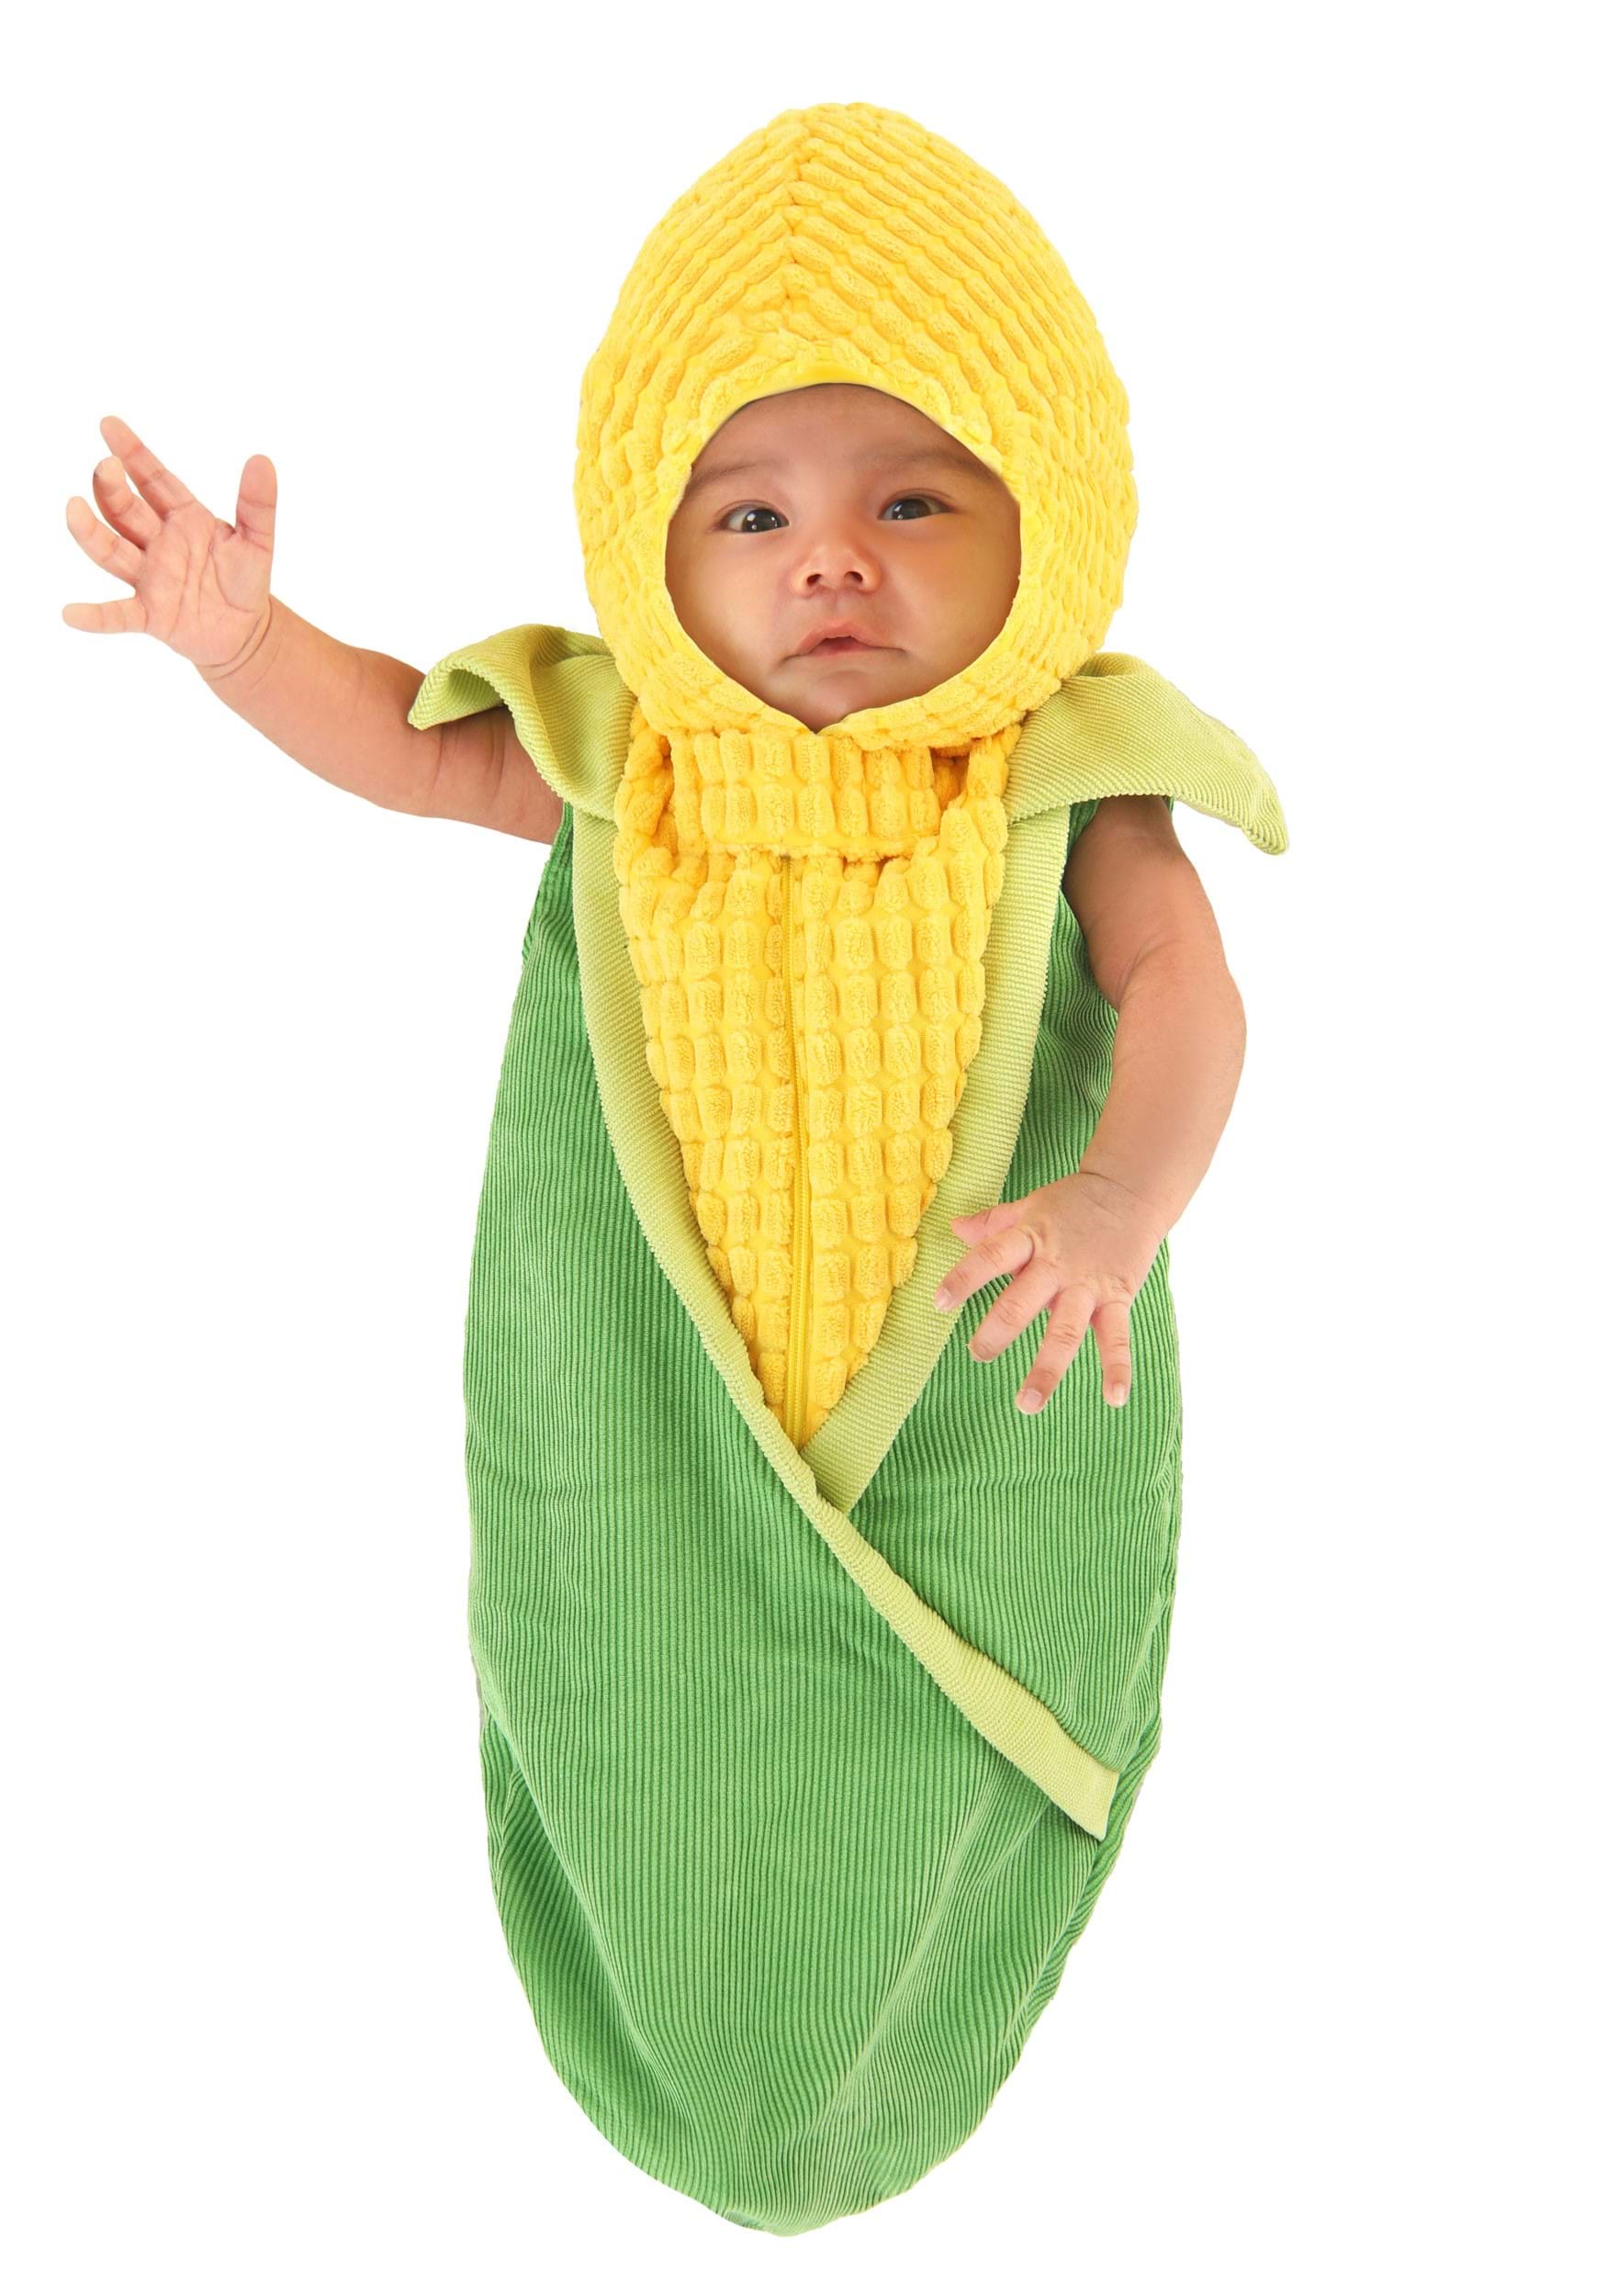 Image of Aww Shucks Corn on the Cob Costume Bunting ID FUN5295IN-0/3mo